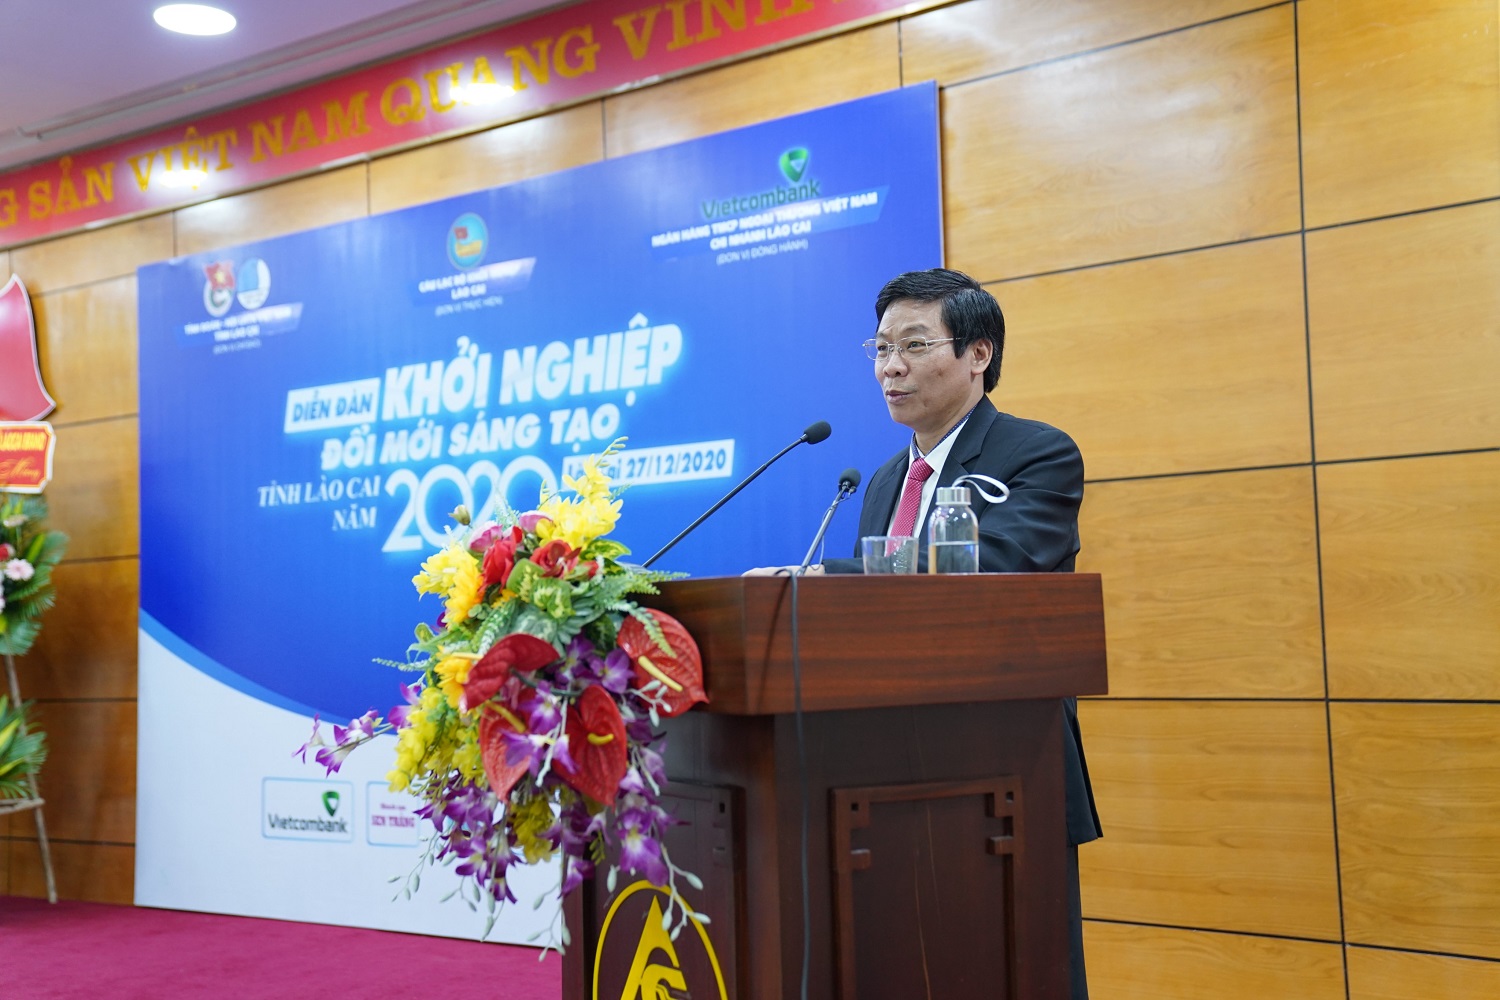 Tọa đàm diễn đàn “Khởi nghiệp đổi mới sáng tạo tỉnh Lào Cai 2020”